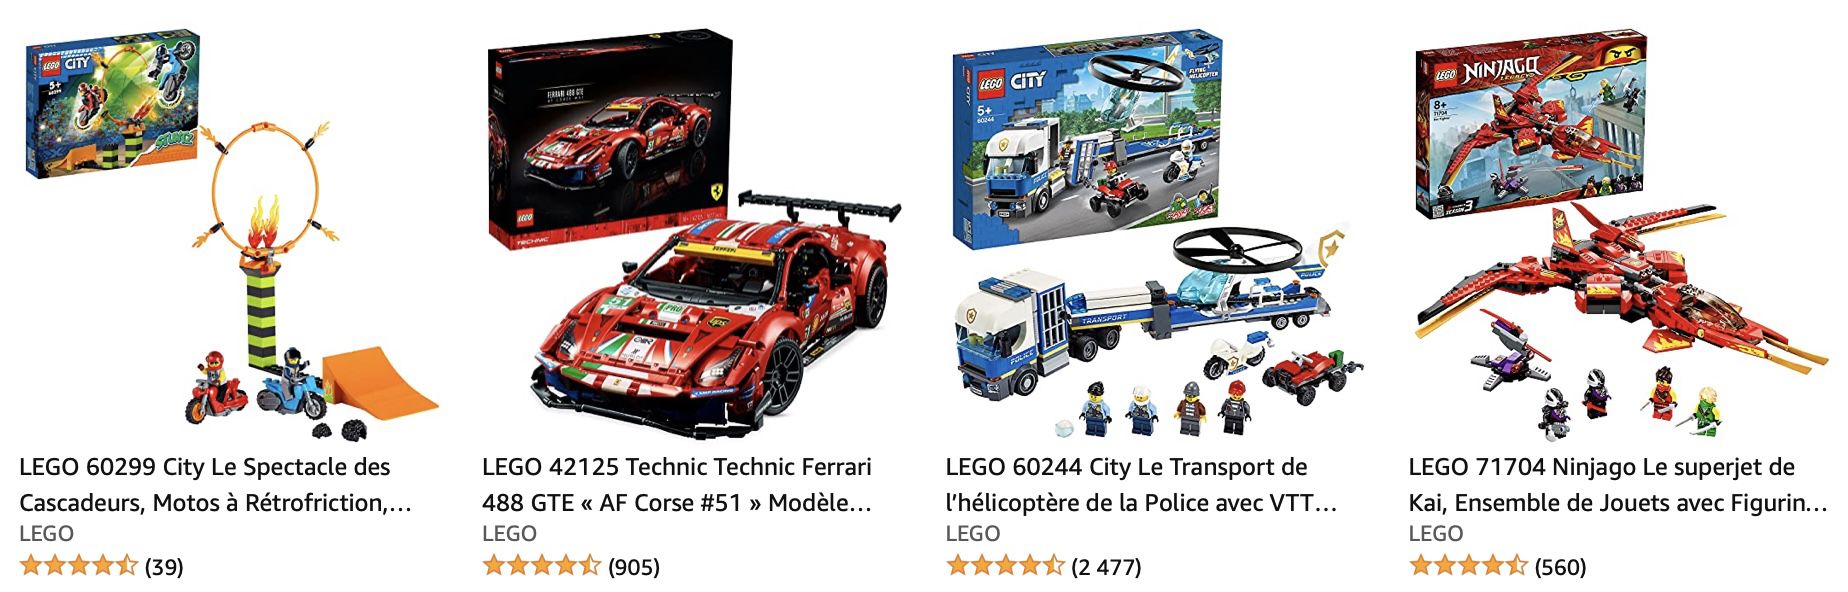 3 Legos zum Preis von 2 bei Amazon Frankreich